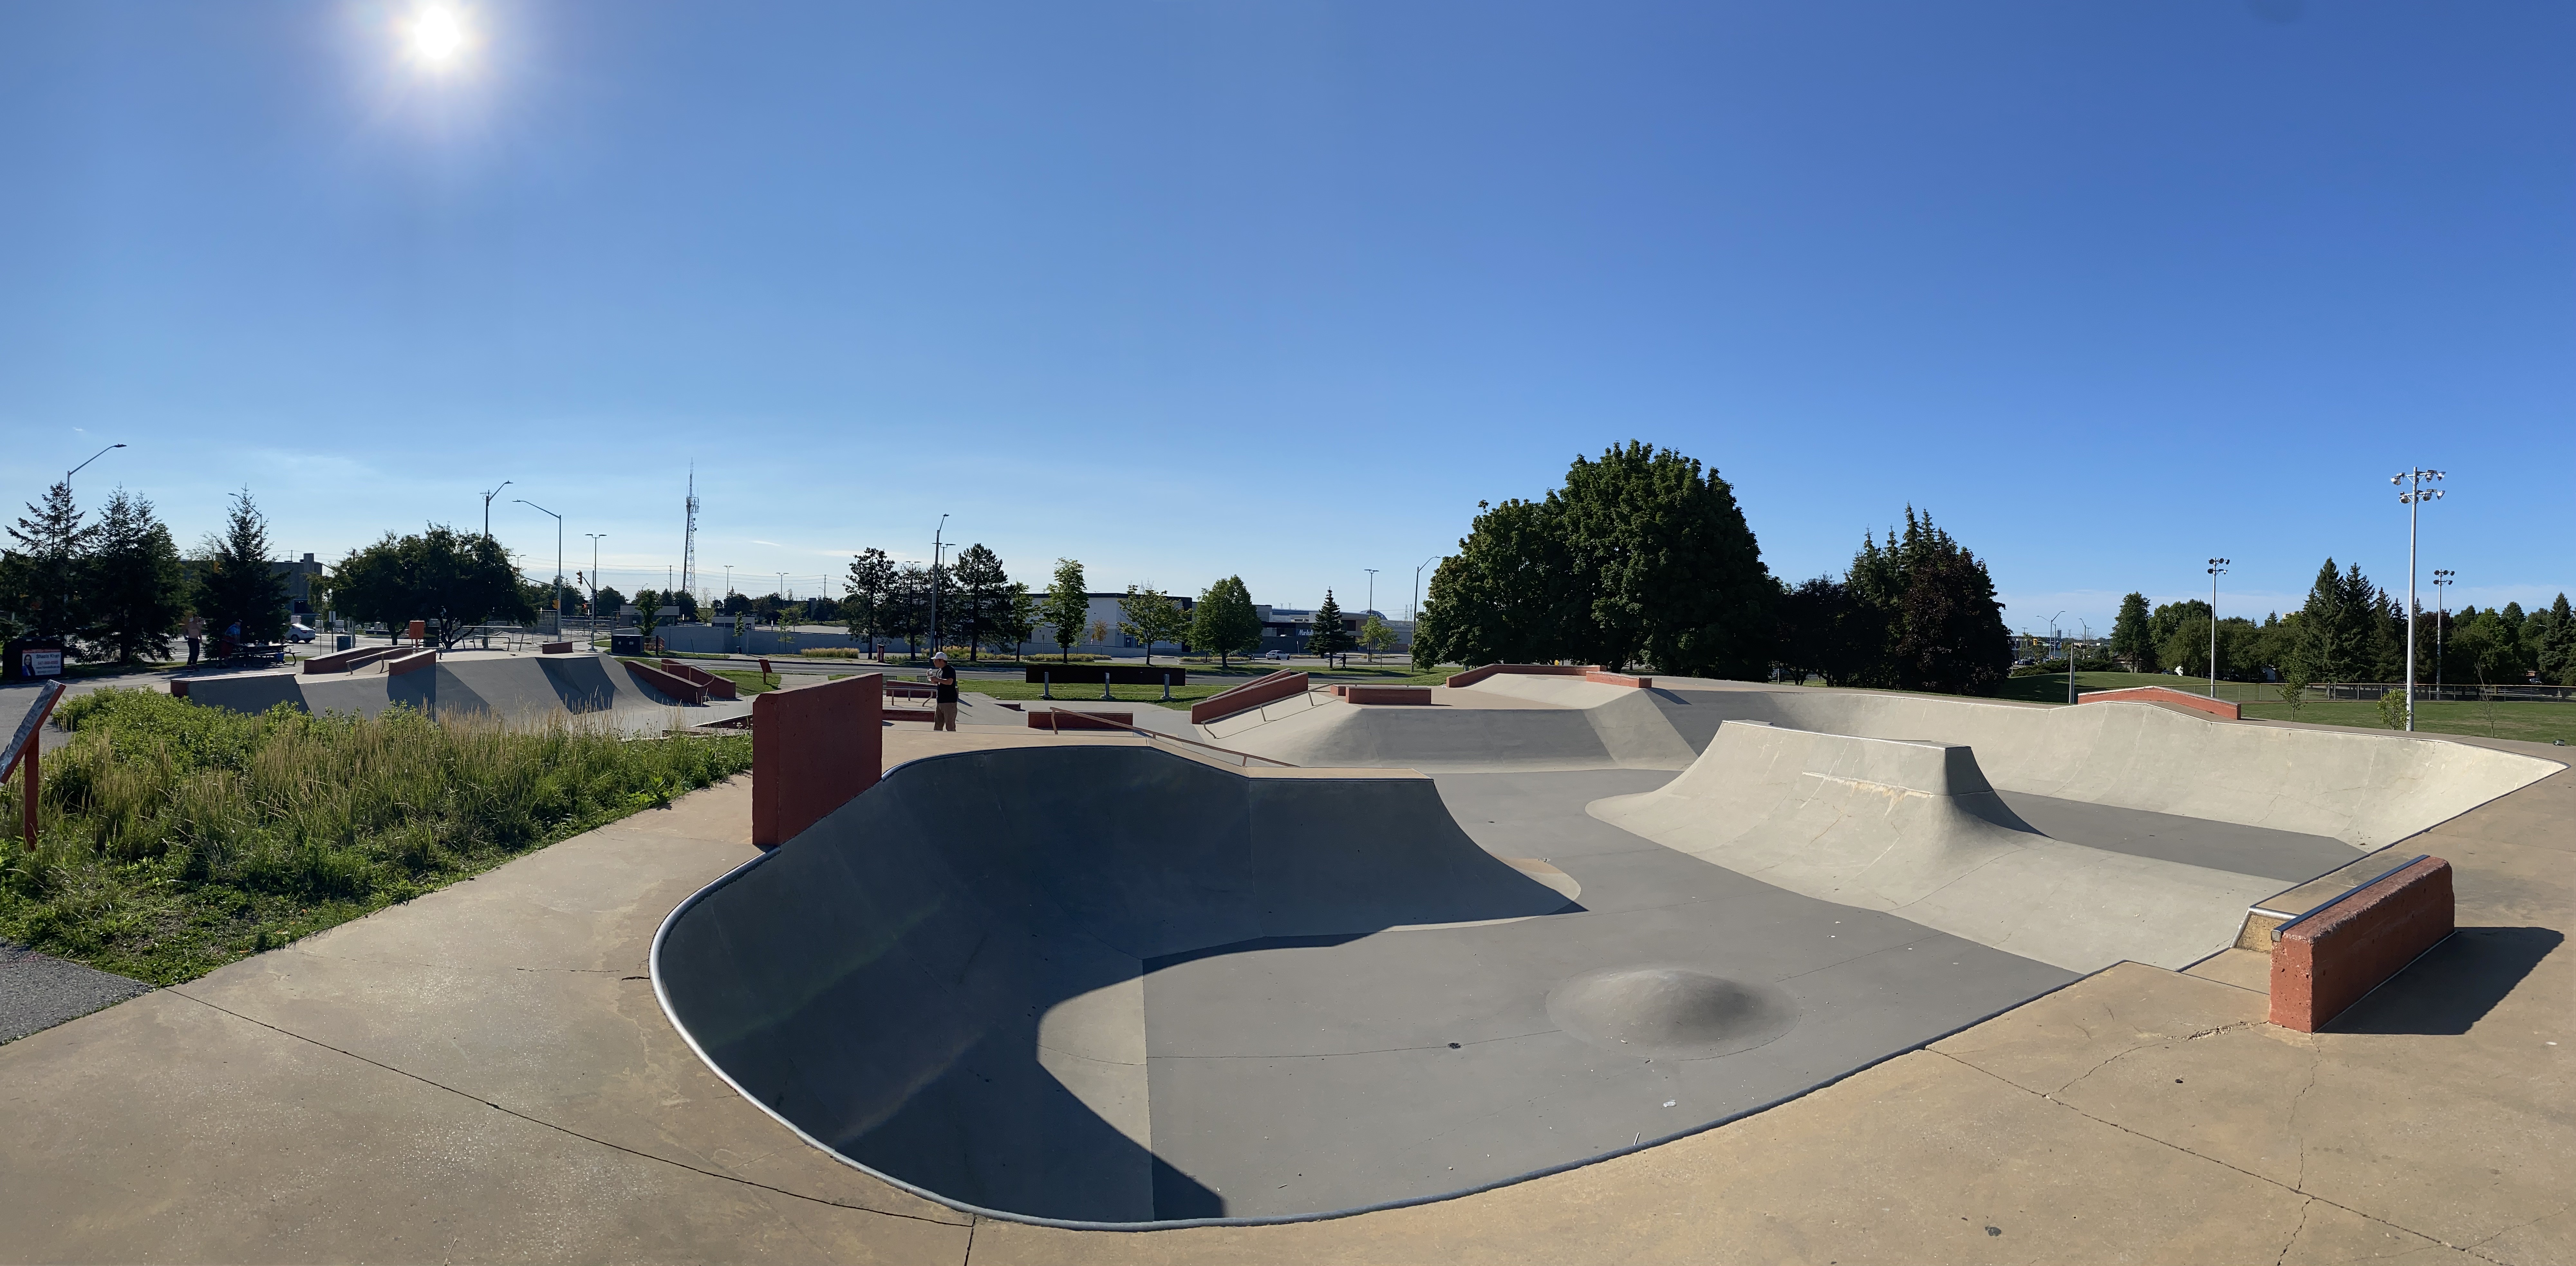 Markham Centennial Skatepark from the side of the bowl